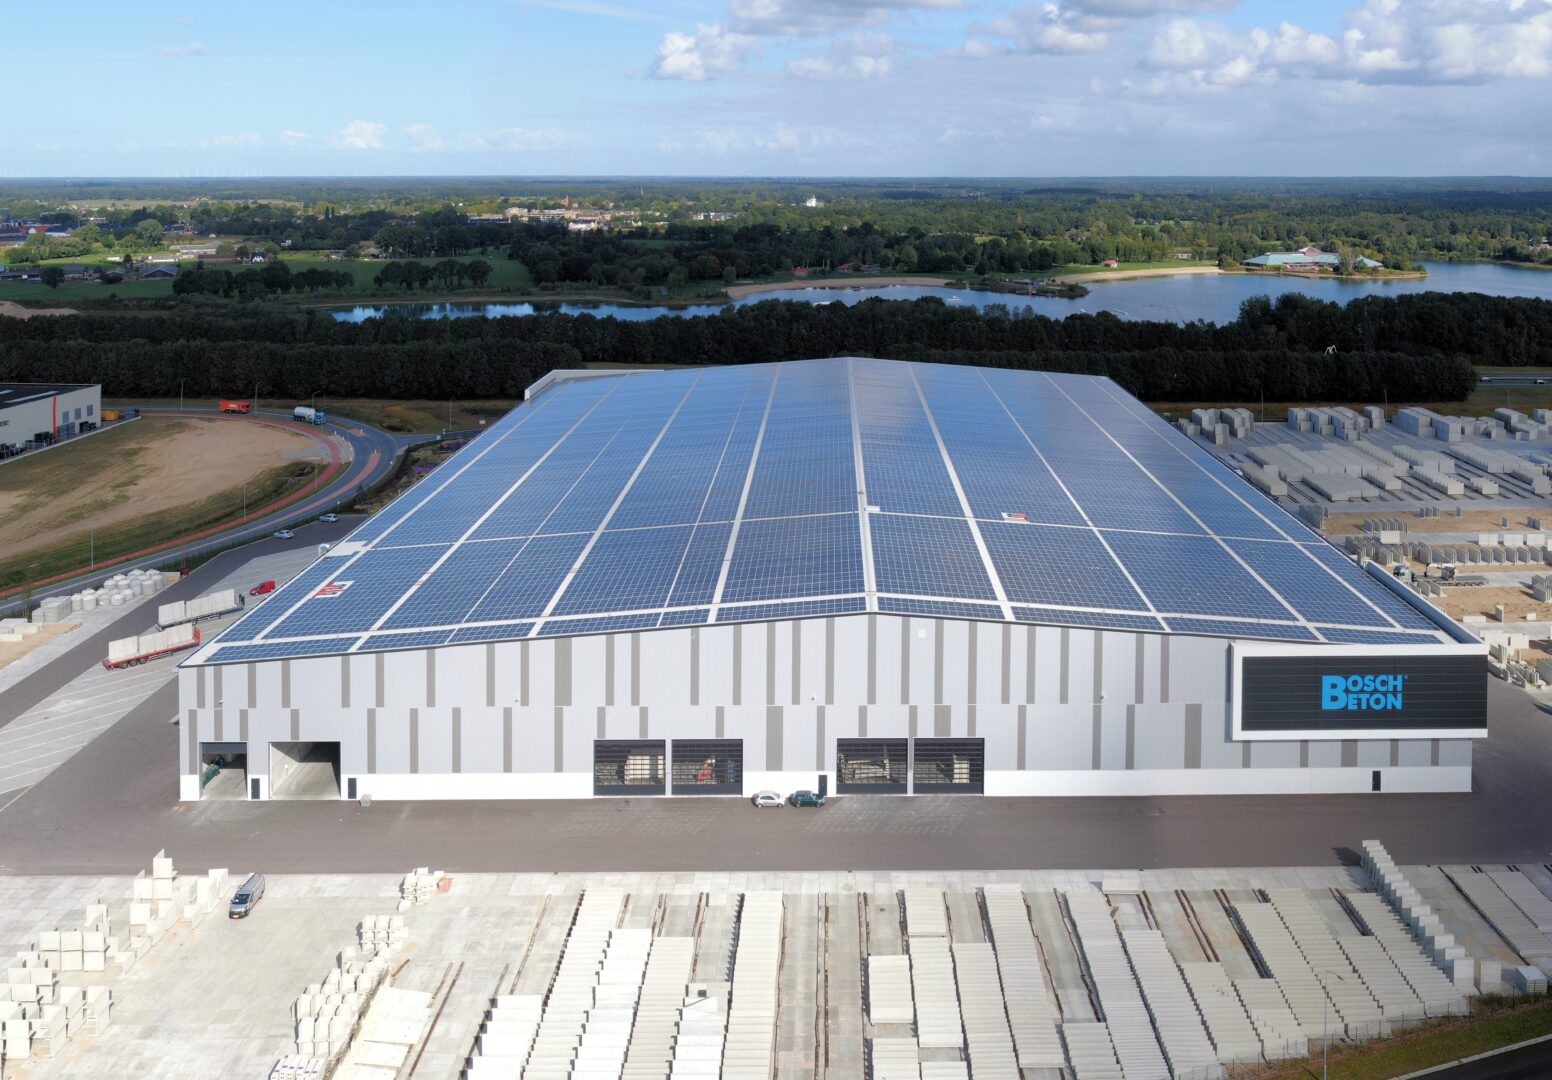 18.500 zonnepanelen voorzien Bosch Beton in Barneveld van energie.